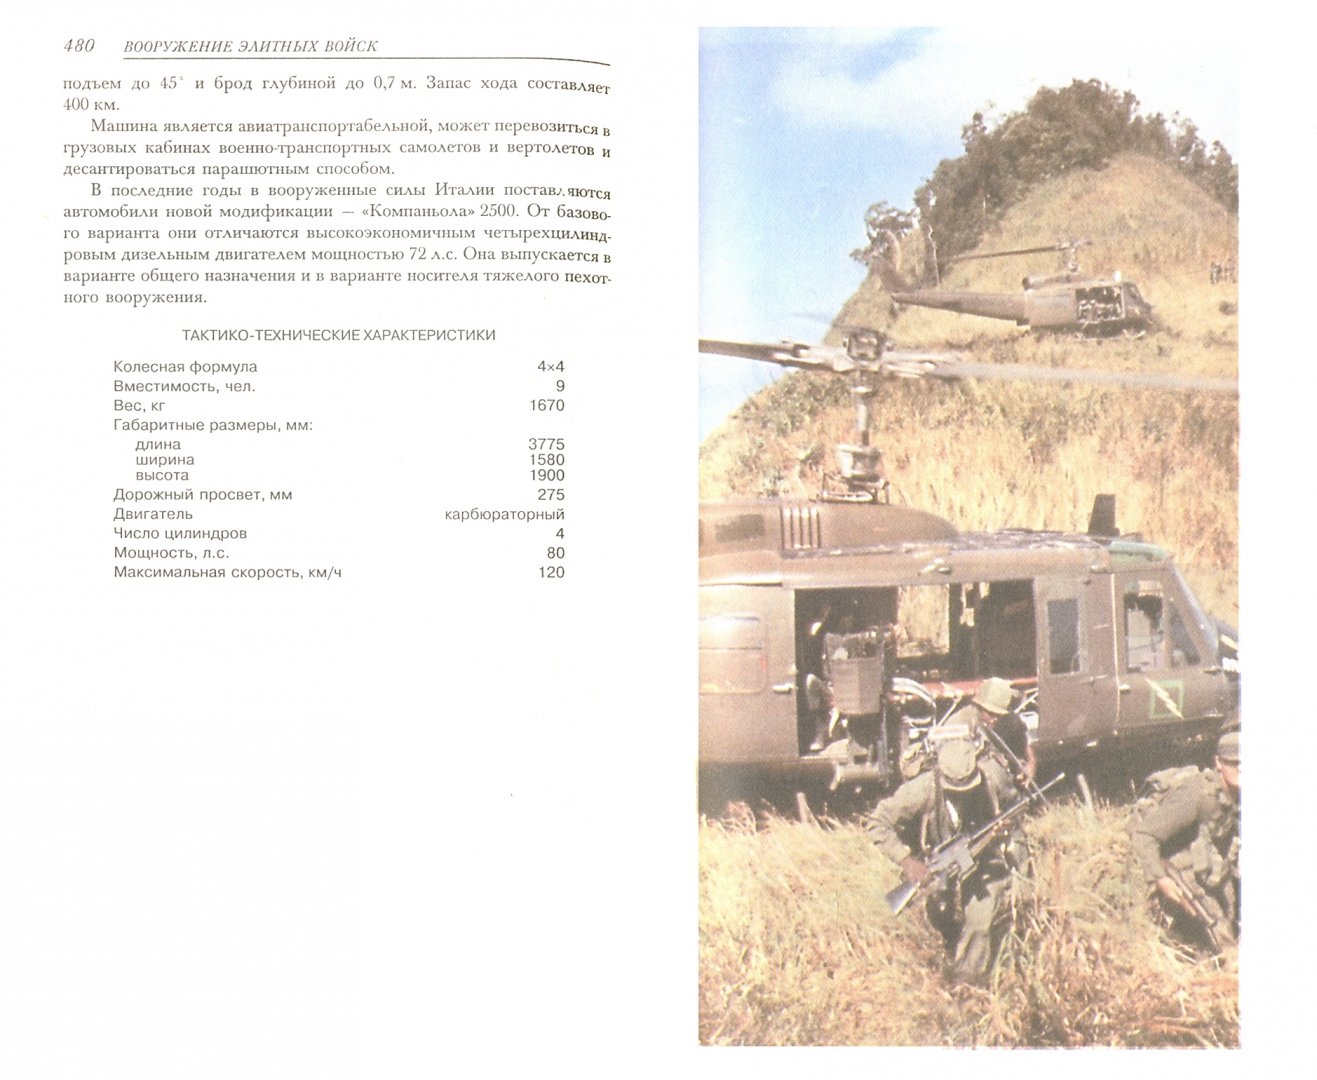 Иллюстрация 1 из 54 для Вооружение элитных войск - Виктор Шунков | Лабиринт - книги. Источник: Лабиринт